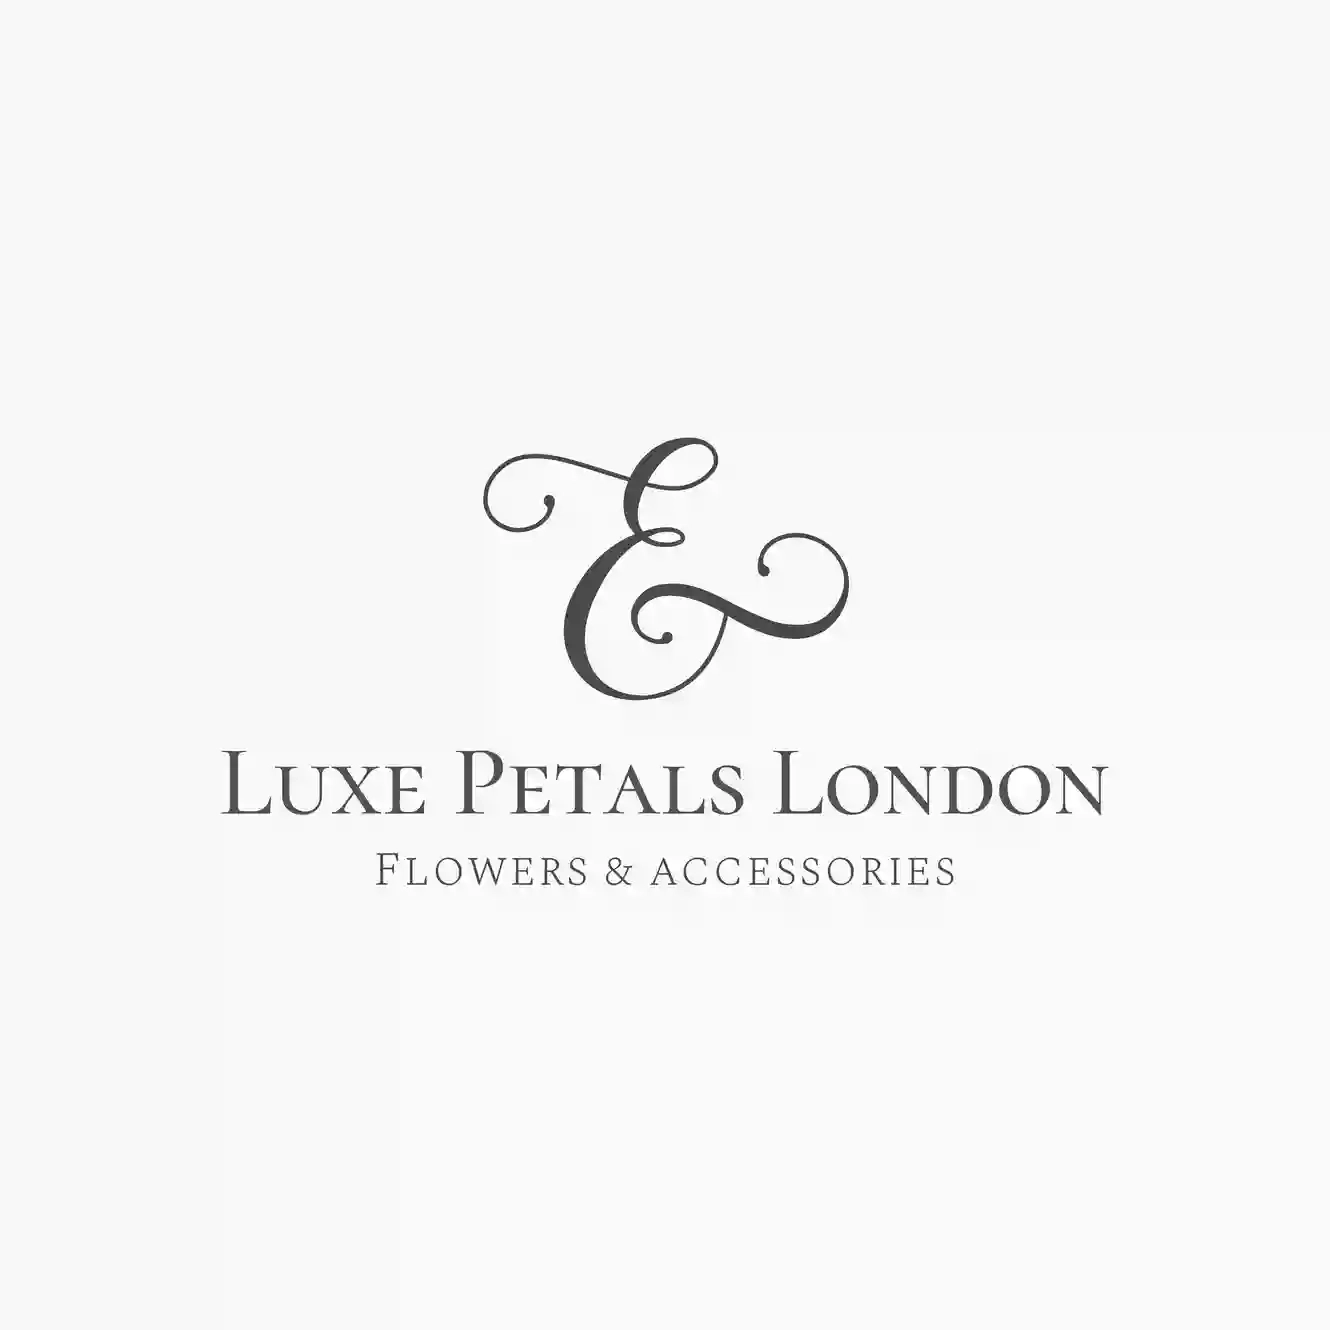 Luxe Petals London